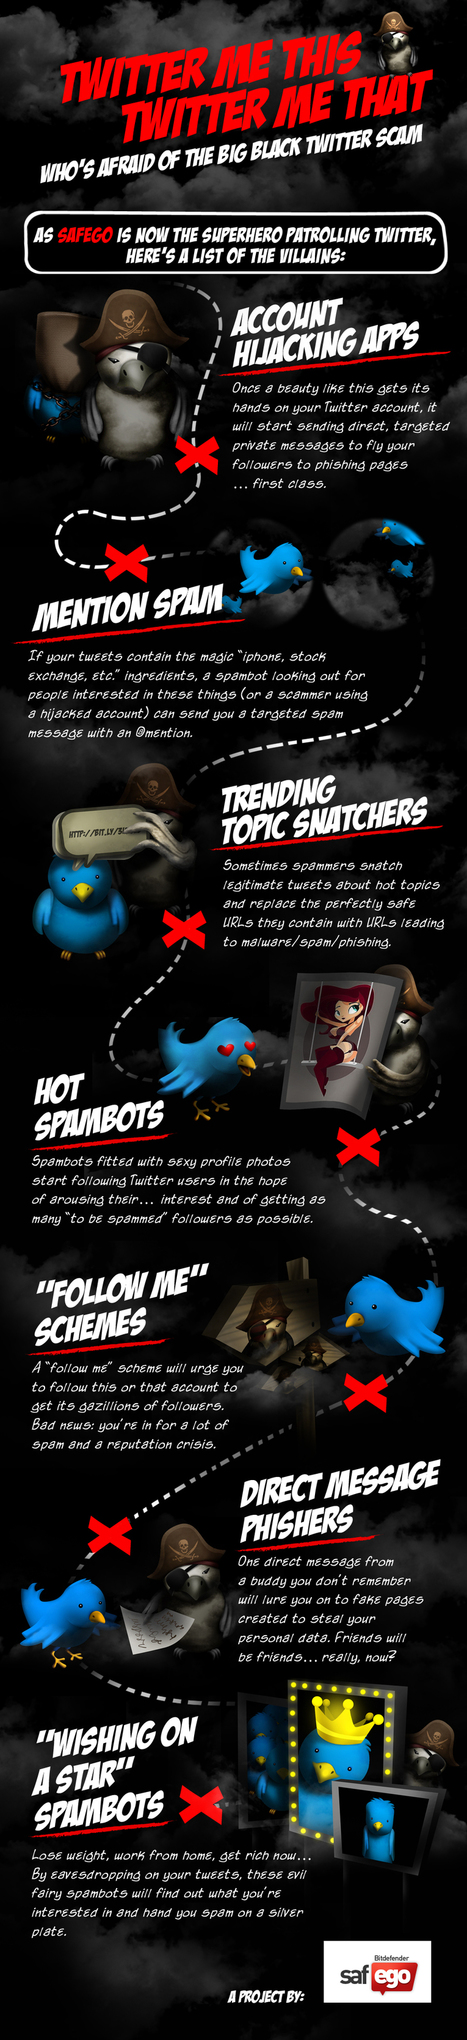 [Infographic] Types of Twitter Scams | ICT Security-Sécurité PC et Internet | Scoop.it